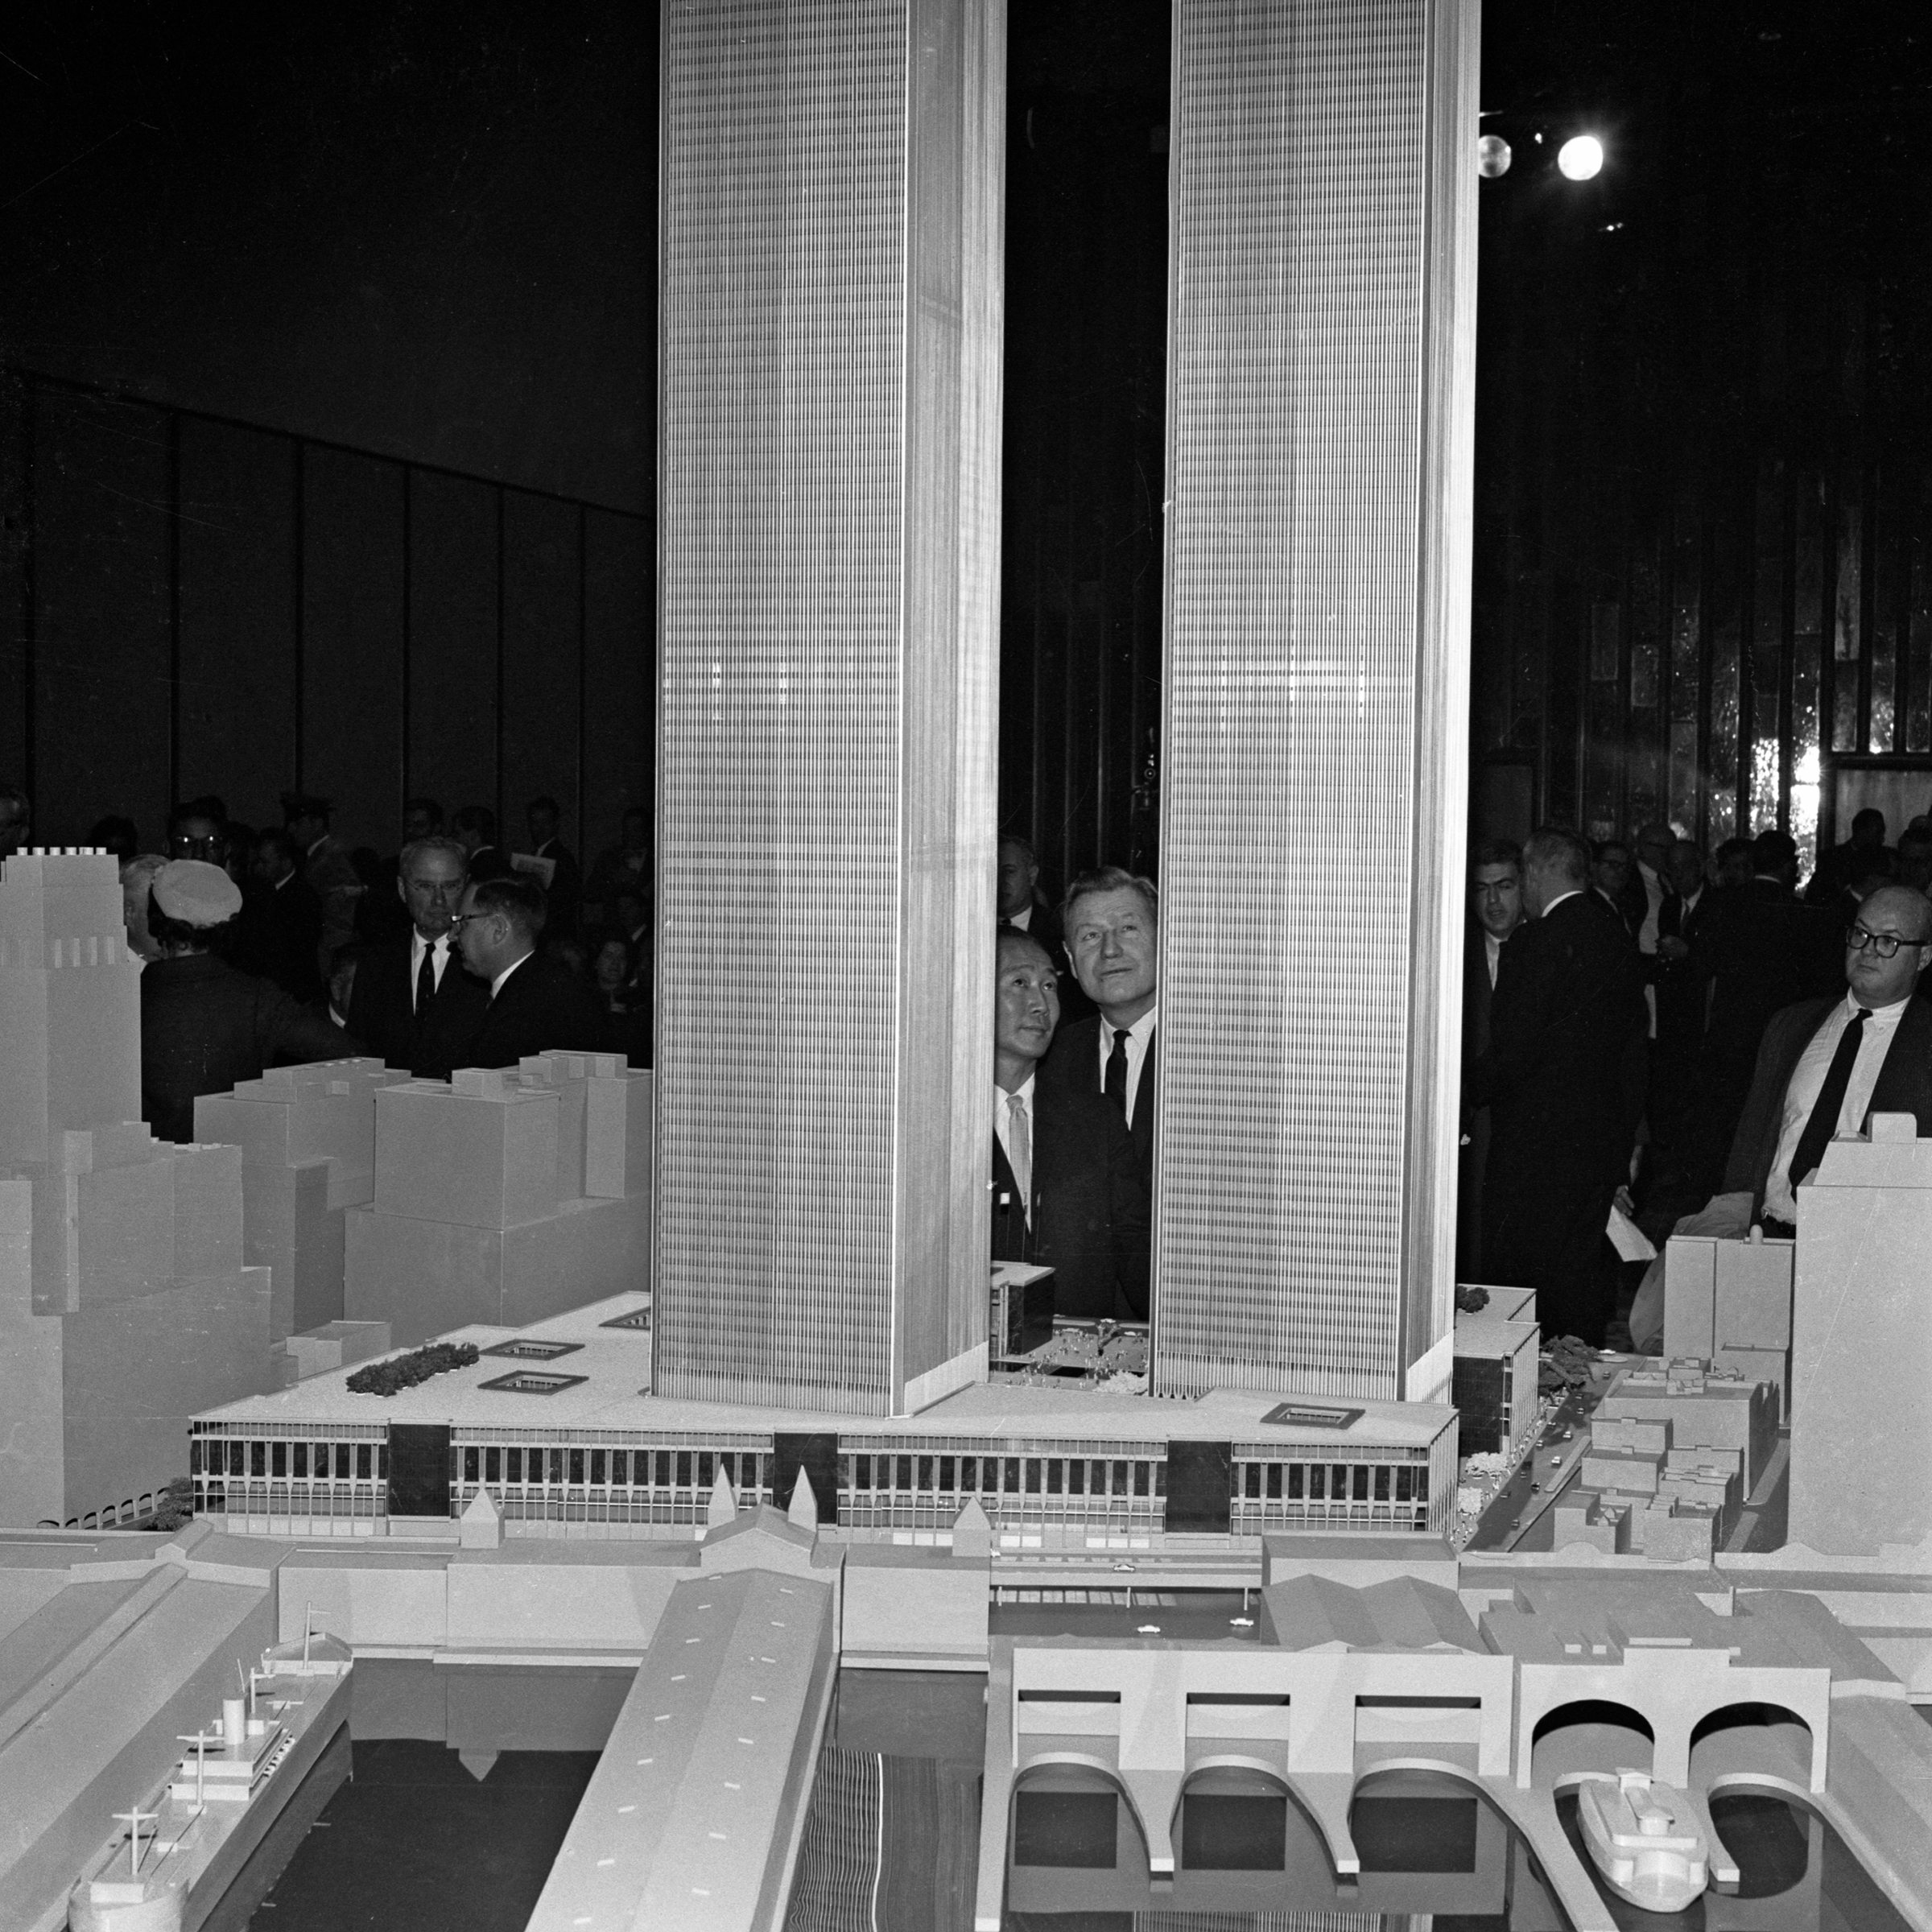 Всемирный торговый центр (World Trade Center &mdash; ВТЦ) &mdash; комплекс из семи зданий, построенный в нью-йоркском районе Нижний&nbsp;Манхэттен в 1973 году, спустя 30 лет после того, как идея появления комплекса была впервые высказана миллиардером Дэвидом Рокфеллером. Предполагалось, что ВТЦ простимулирует реконструкцию Манхэттена &mdash; долгое время деловая жизнь района концентрировалась в его центре, а&nbsp;остальная его часть практически не обновлялась.

Архитекторами проекта стали бюро Emery Roth &amp; Sons и Минору Ямасаки &mdash; выходец из семьи эмигрантов, до этого построивший здания Тихоокеанского научного центра в Сиэтле, жилой комплекс Пруитт-Айгоу в Сент-Луисе (штат Миссури) и др. Ямасаки боялся высоты, поэтому все его проекты отличаются узкими вертикальными окнами. Окна зданий ВТЦ были всего 46&nbsp;см в ширину. Ямасаки объяснял, что так он стремится создать чувство безопасности для человека, который мог был подойти к окну и опереться на него обеими руками, почувствовав себя в безопасности.

По первоначальному плану Ямасаки&nbsp;башни-близнецы должны были быть высотой по 80 этажей, но из-за требований Портового управления здания высота зданий была увеличена до 110 этажей. Открытые в 1973 году башни стали высочайшими в мире небоскребами. Кроме башен план ВТЦ включал в себя строительство четырех малоэтажных зданий и 47-этажного &laquo;7 World Trade Cente&raquo; (был построен в середине 1980-х).
